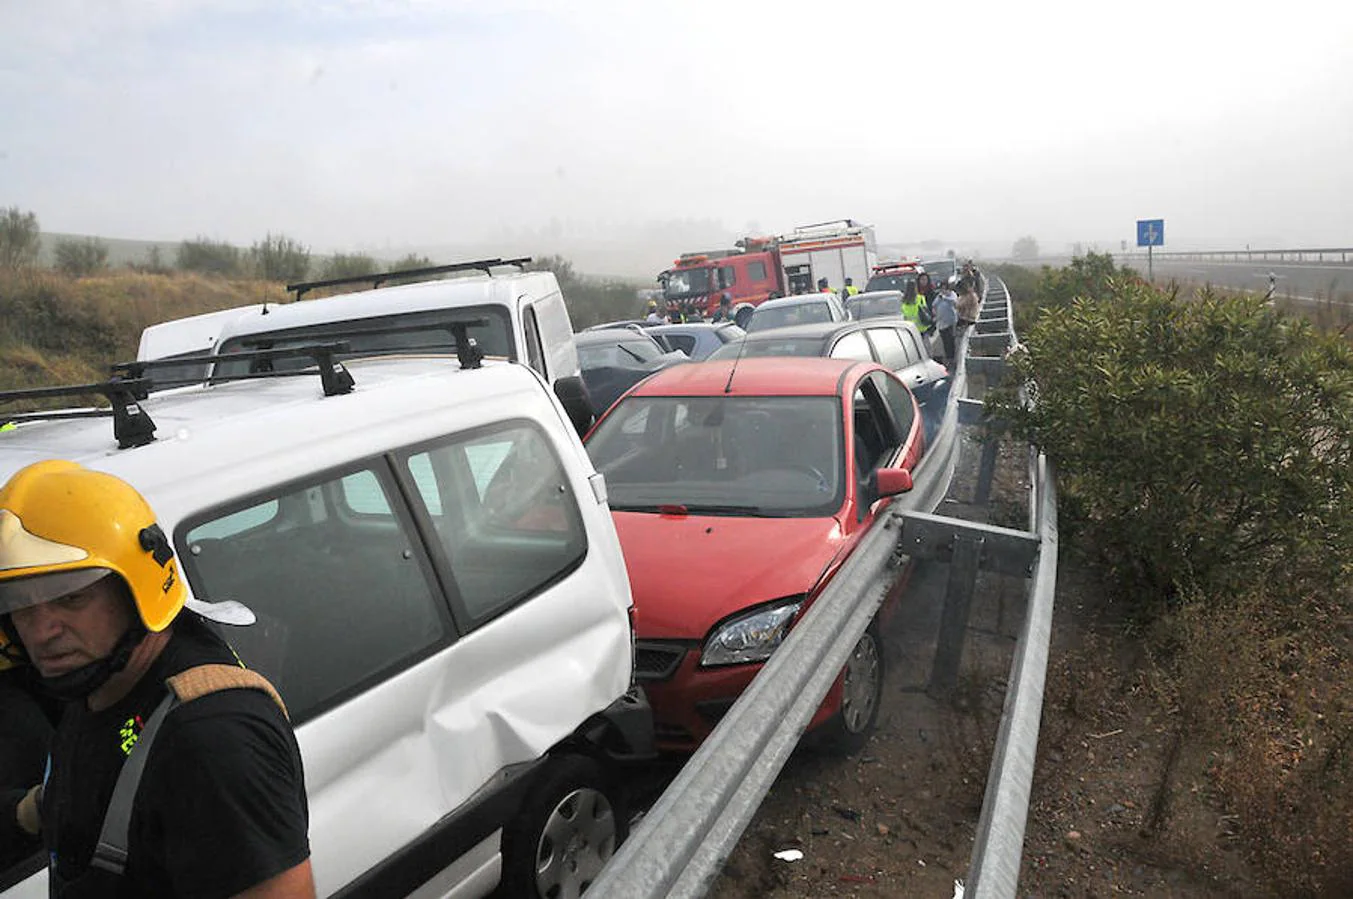 Imágenes de una colisión múltiple que ha tenido lugar la mañana del 19 de octubre, a la altura de la localidad cacereña de Galisteo.